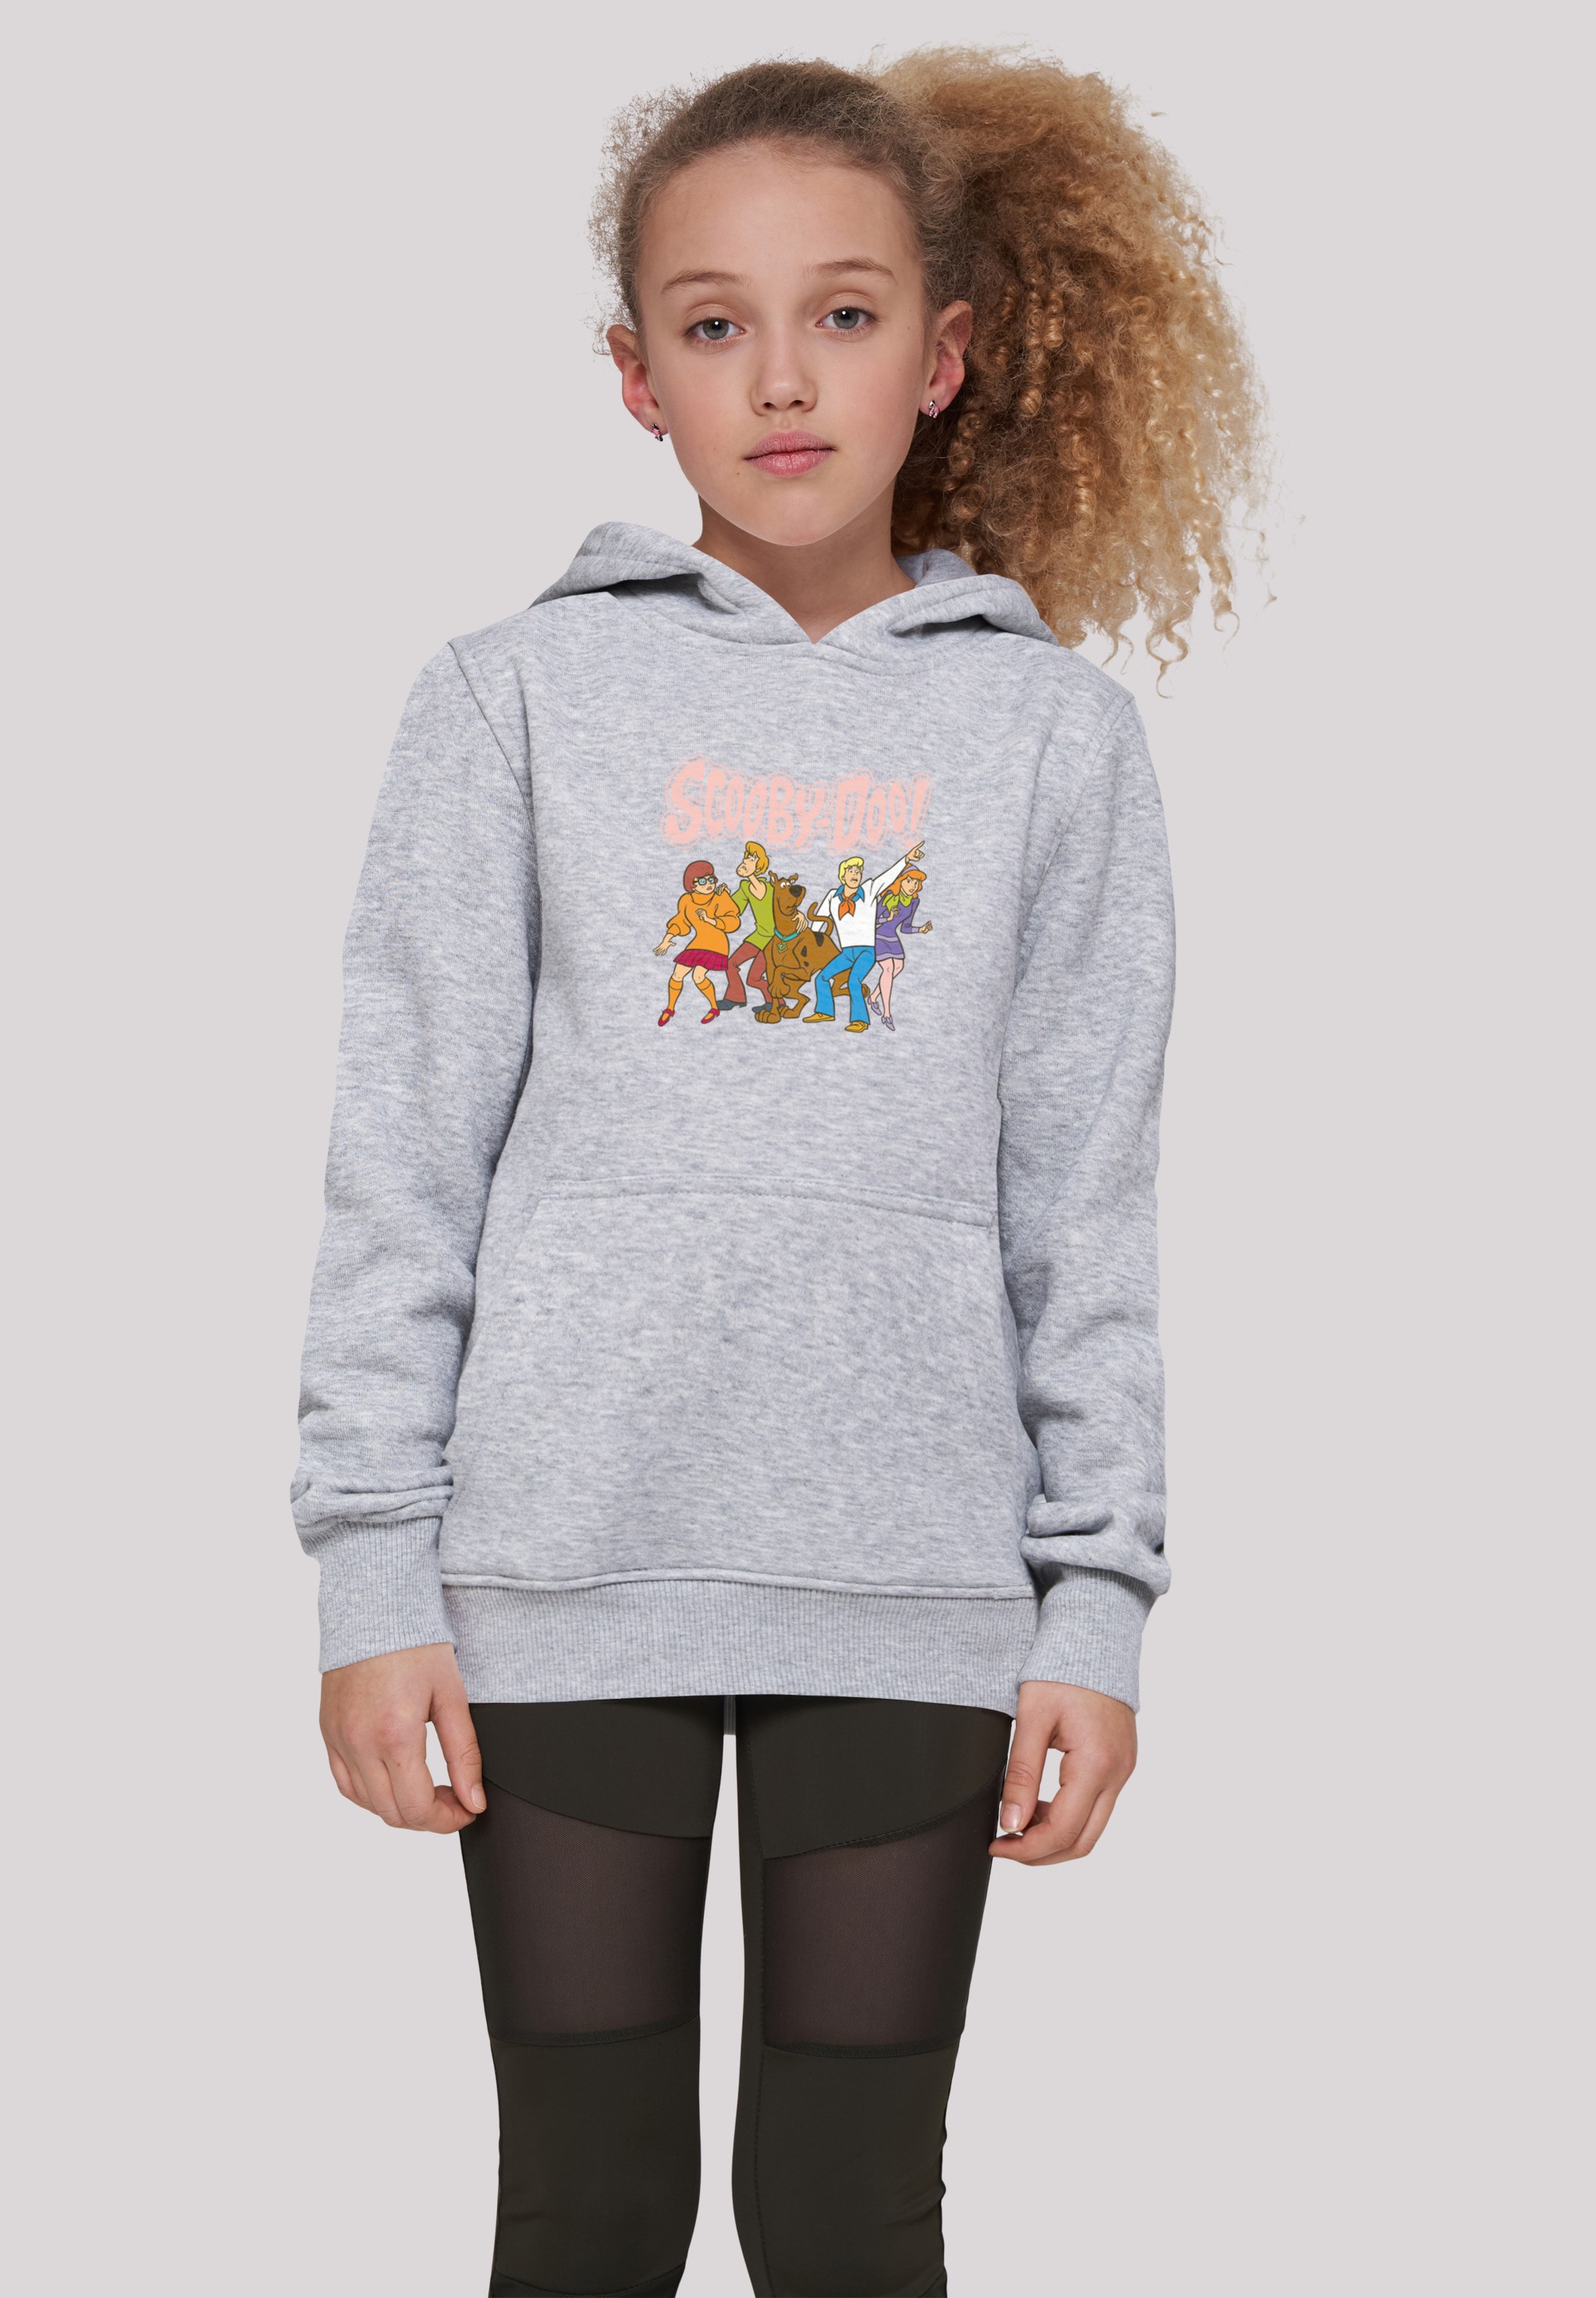 Unisex | Kinder,Premium Group«, kaufen online Classic F4NT4STIC Doo »Scooby BAUR ,Jungen,Mädchen,Bedruckt Merch Sweatshirt